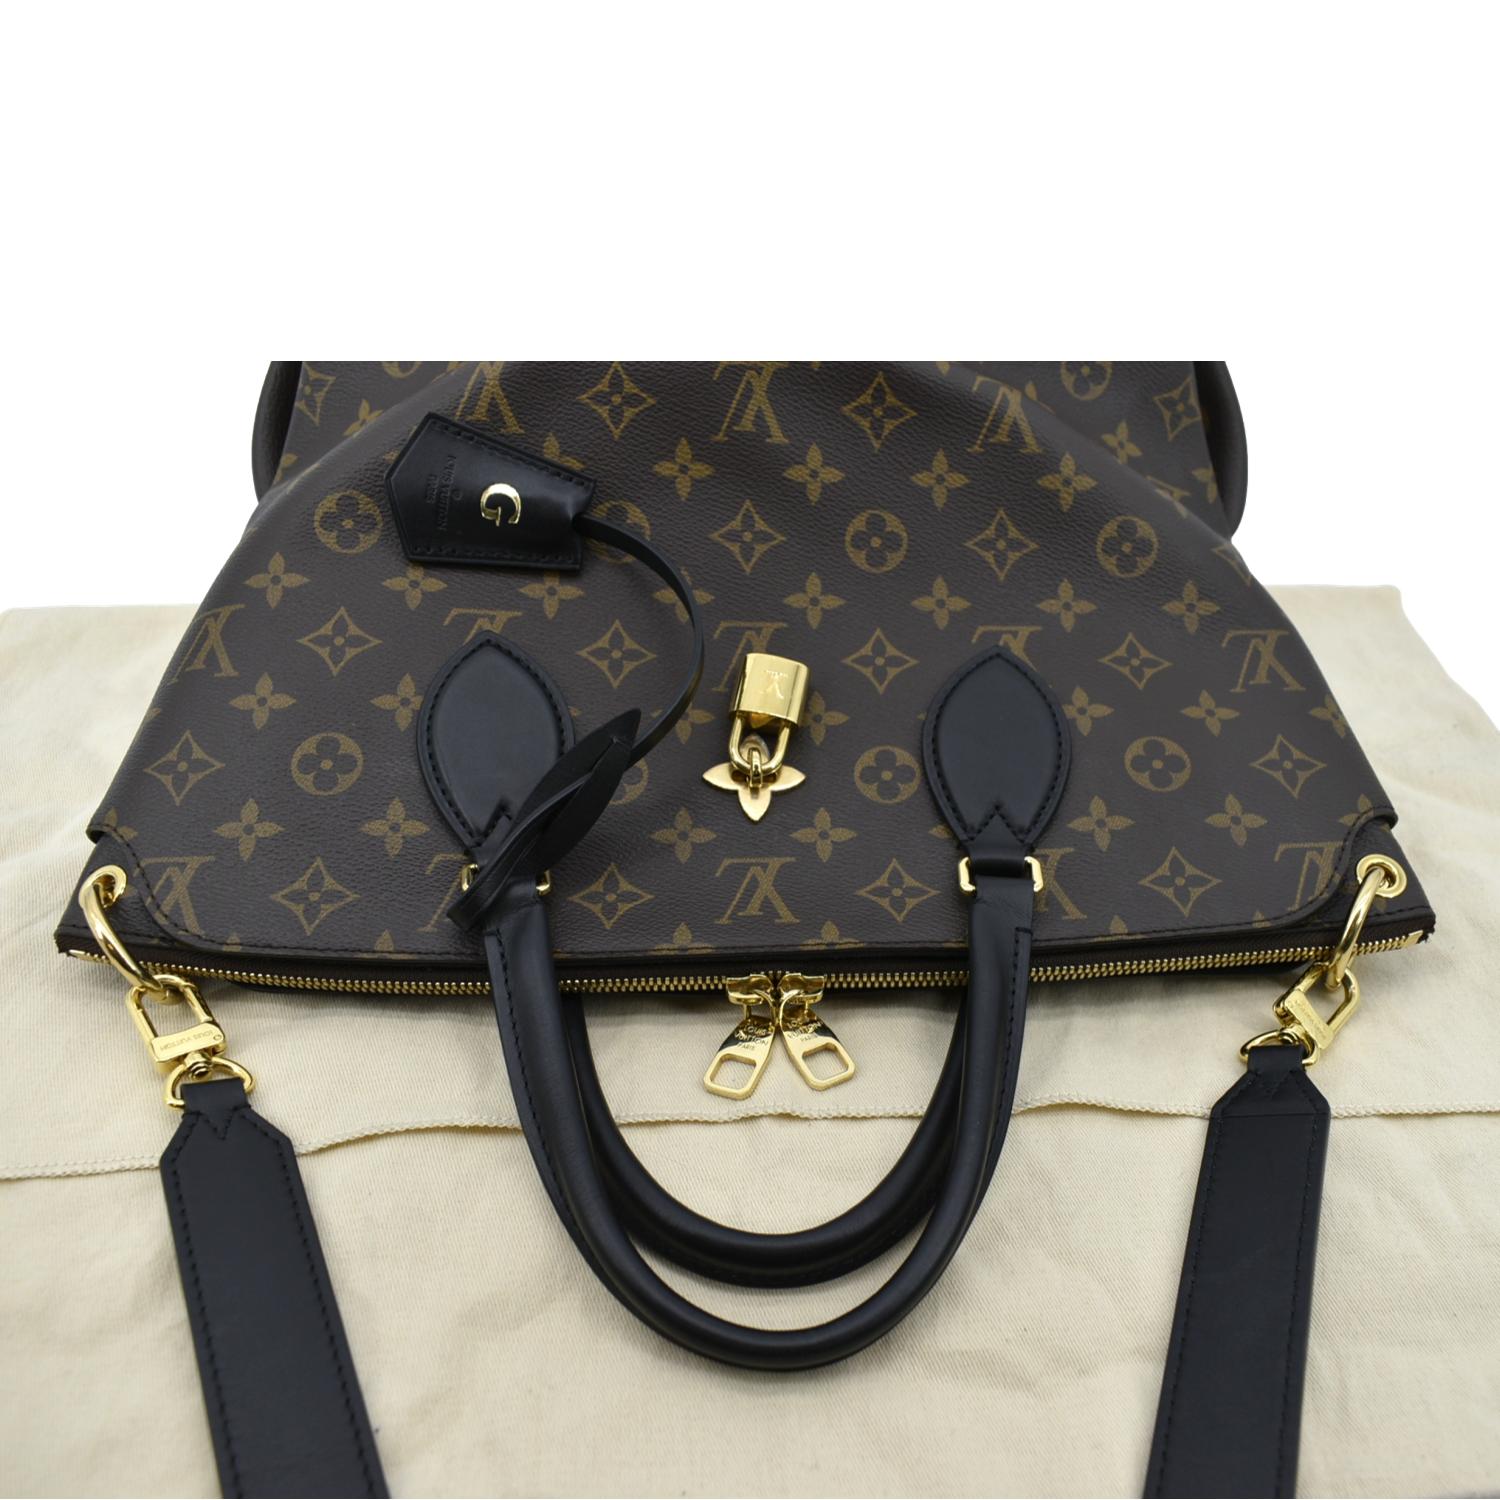 Best Deals for Louis Vuitton Flower Bag